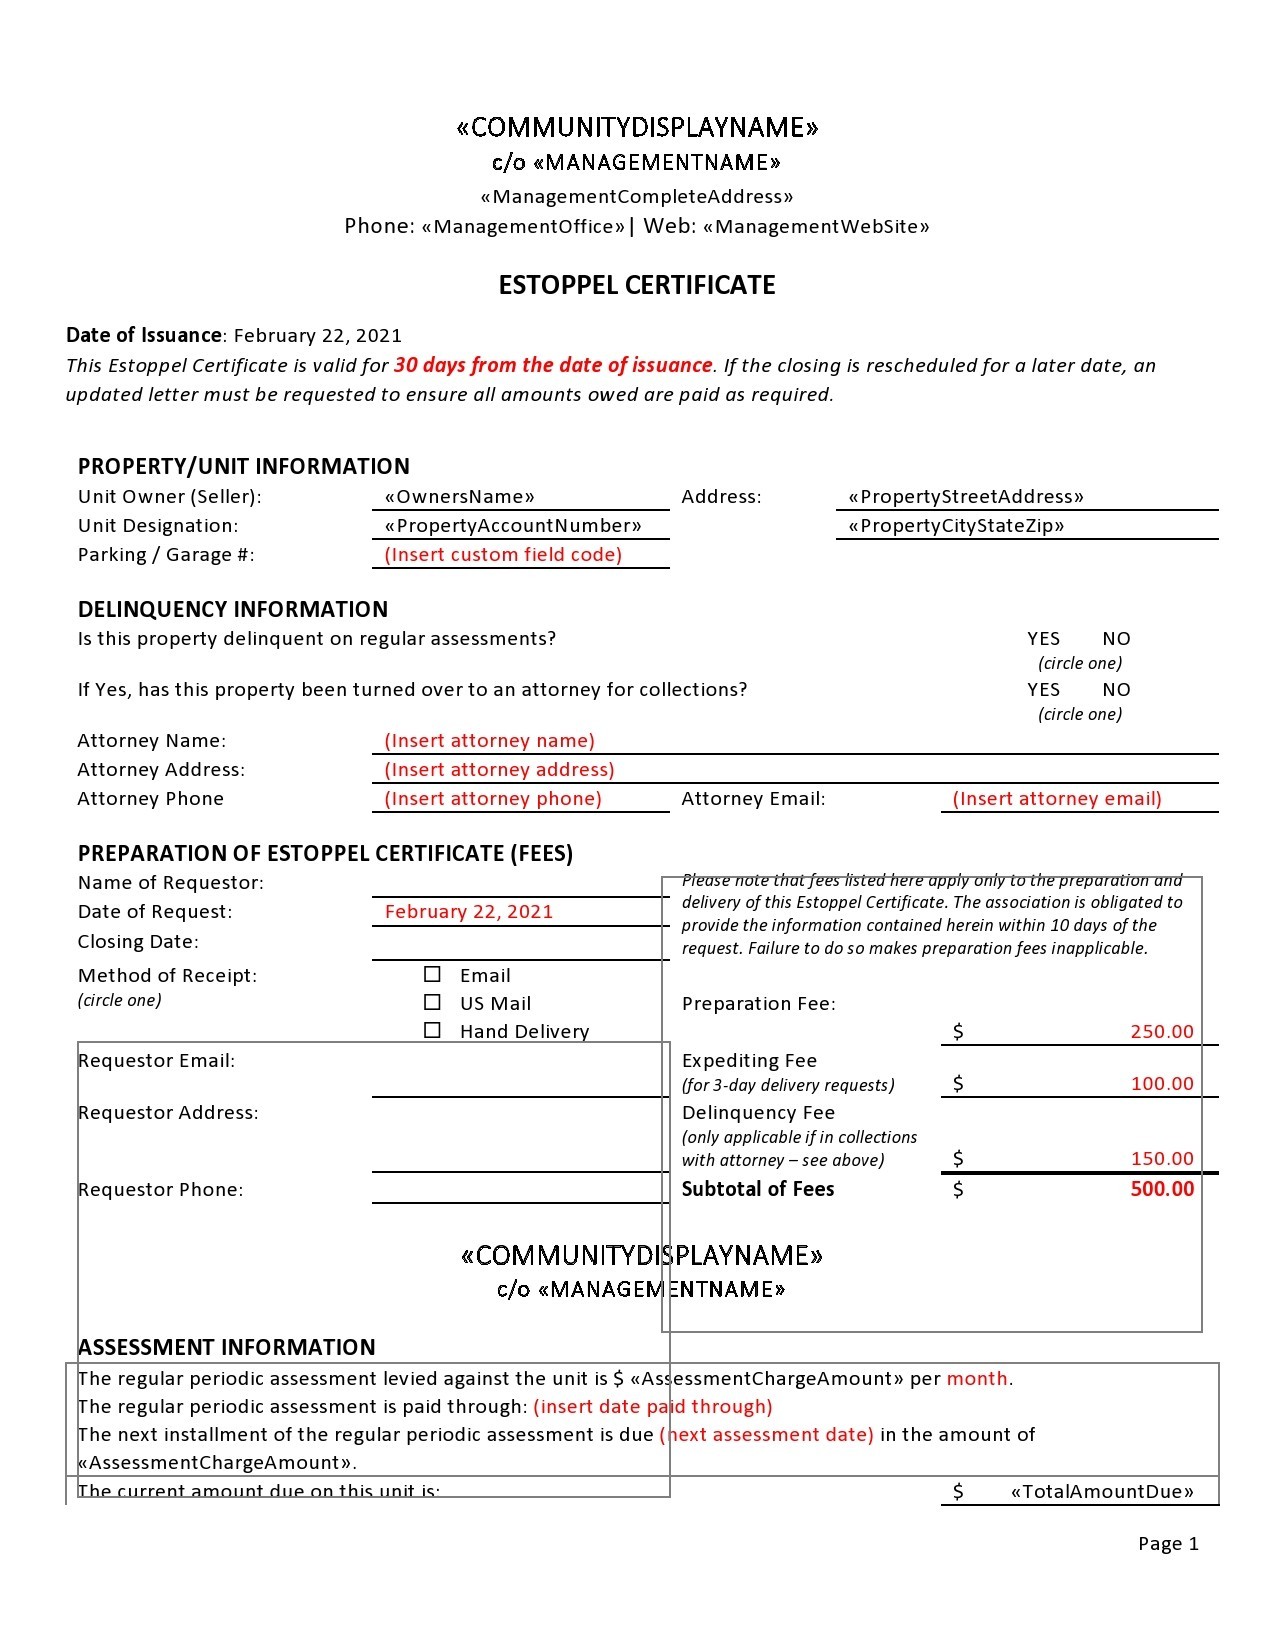 Free estoppel certificate form 14